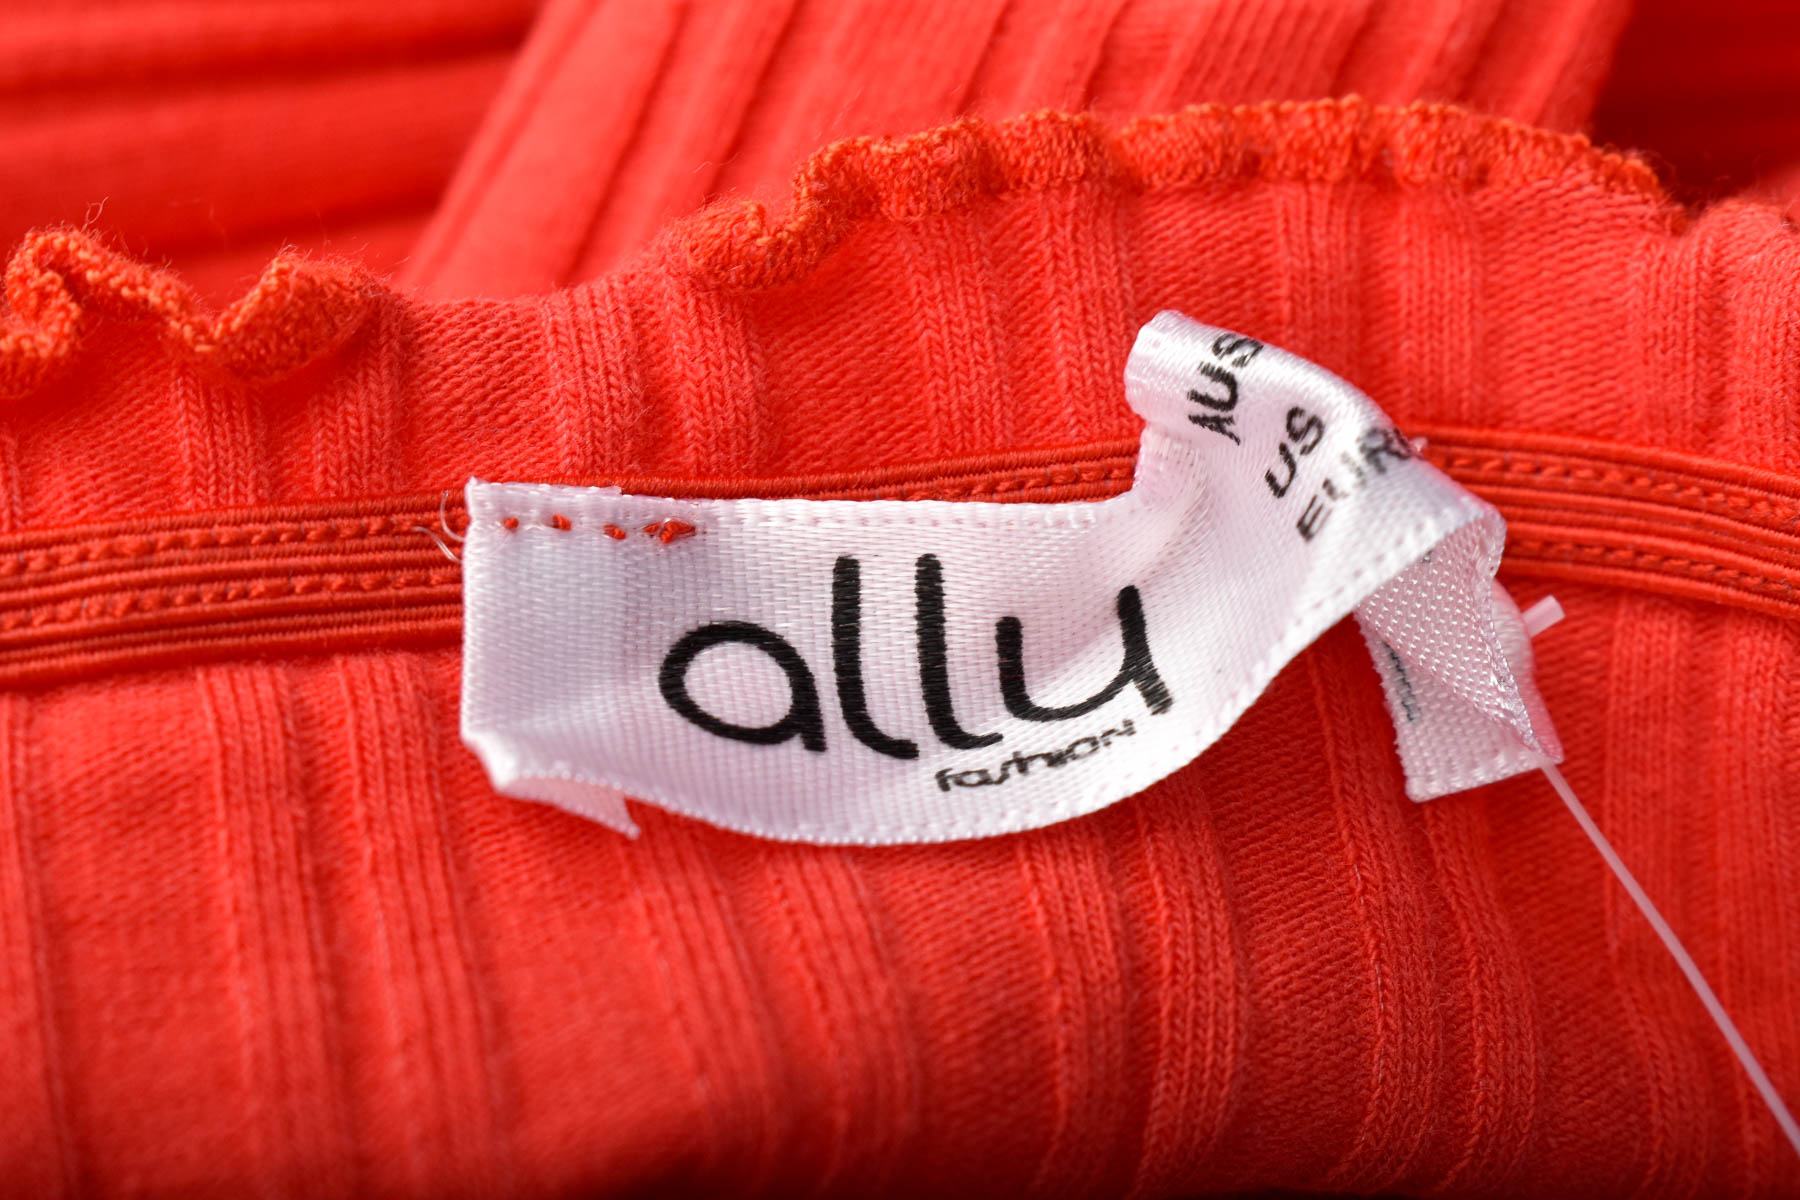 Bluza de damă - Ally fashion - 2